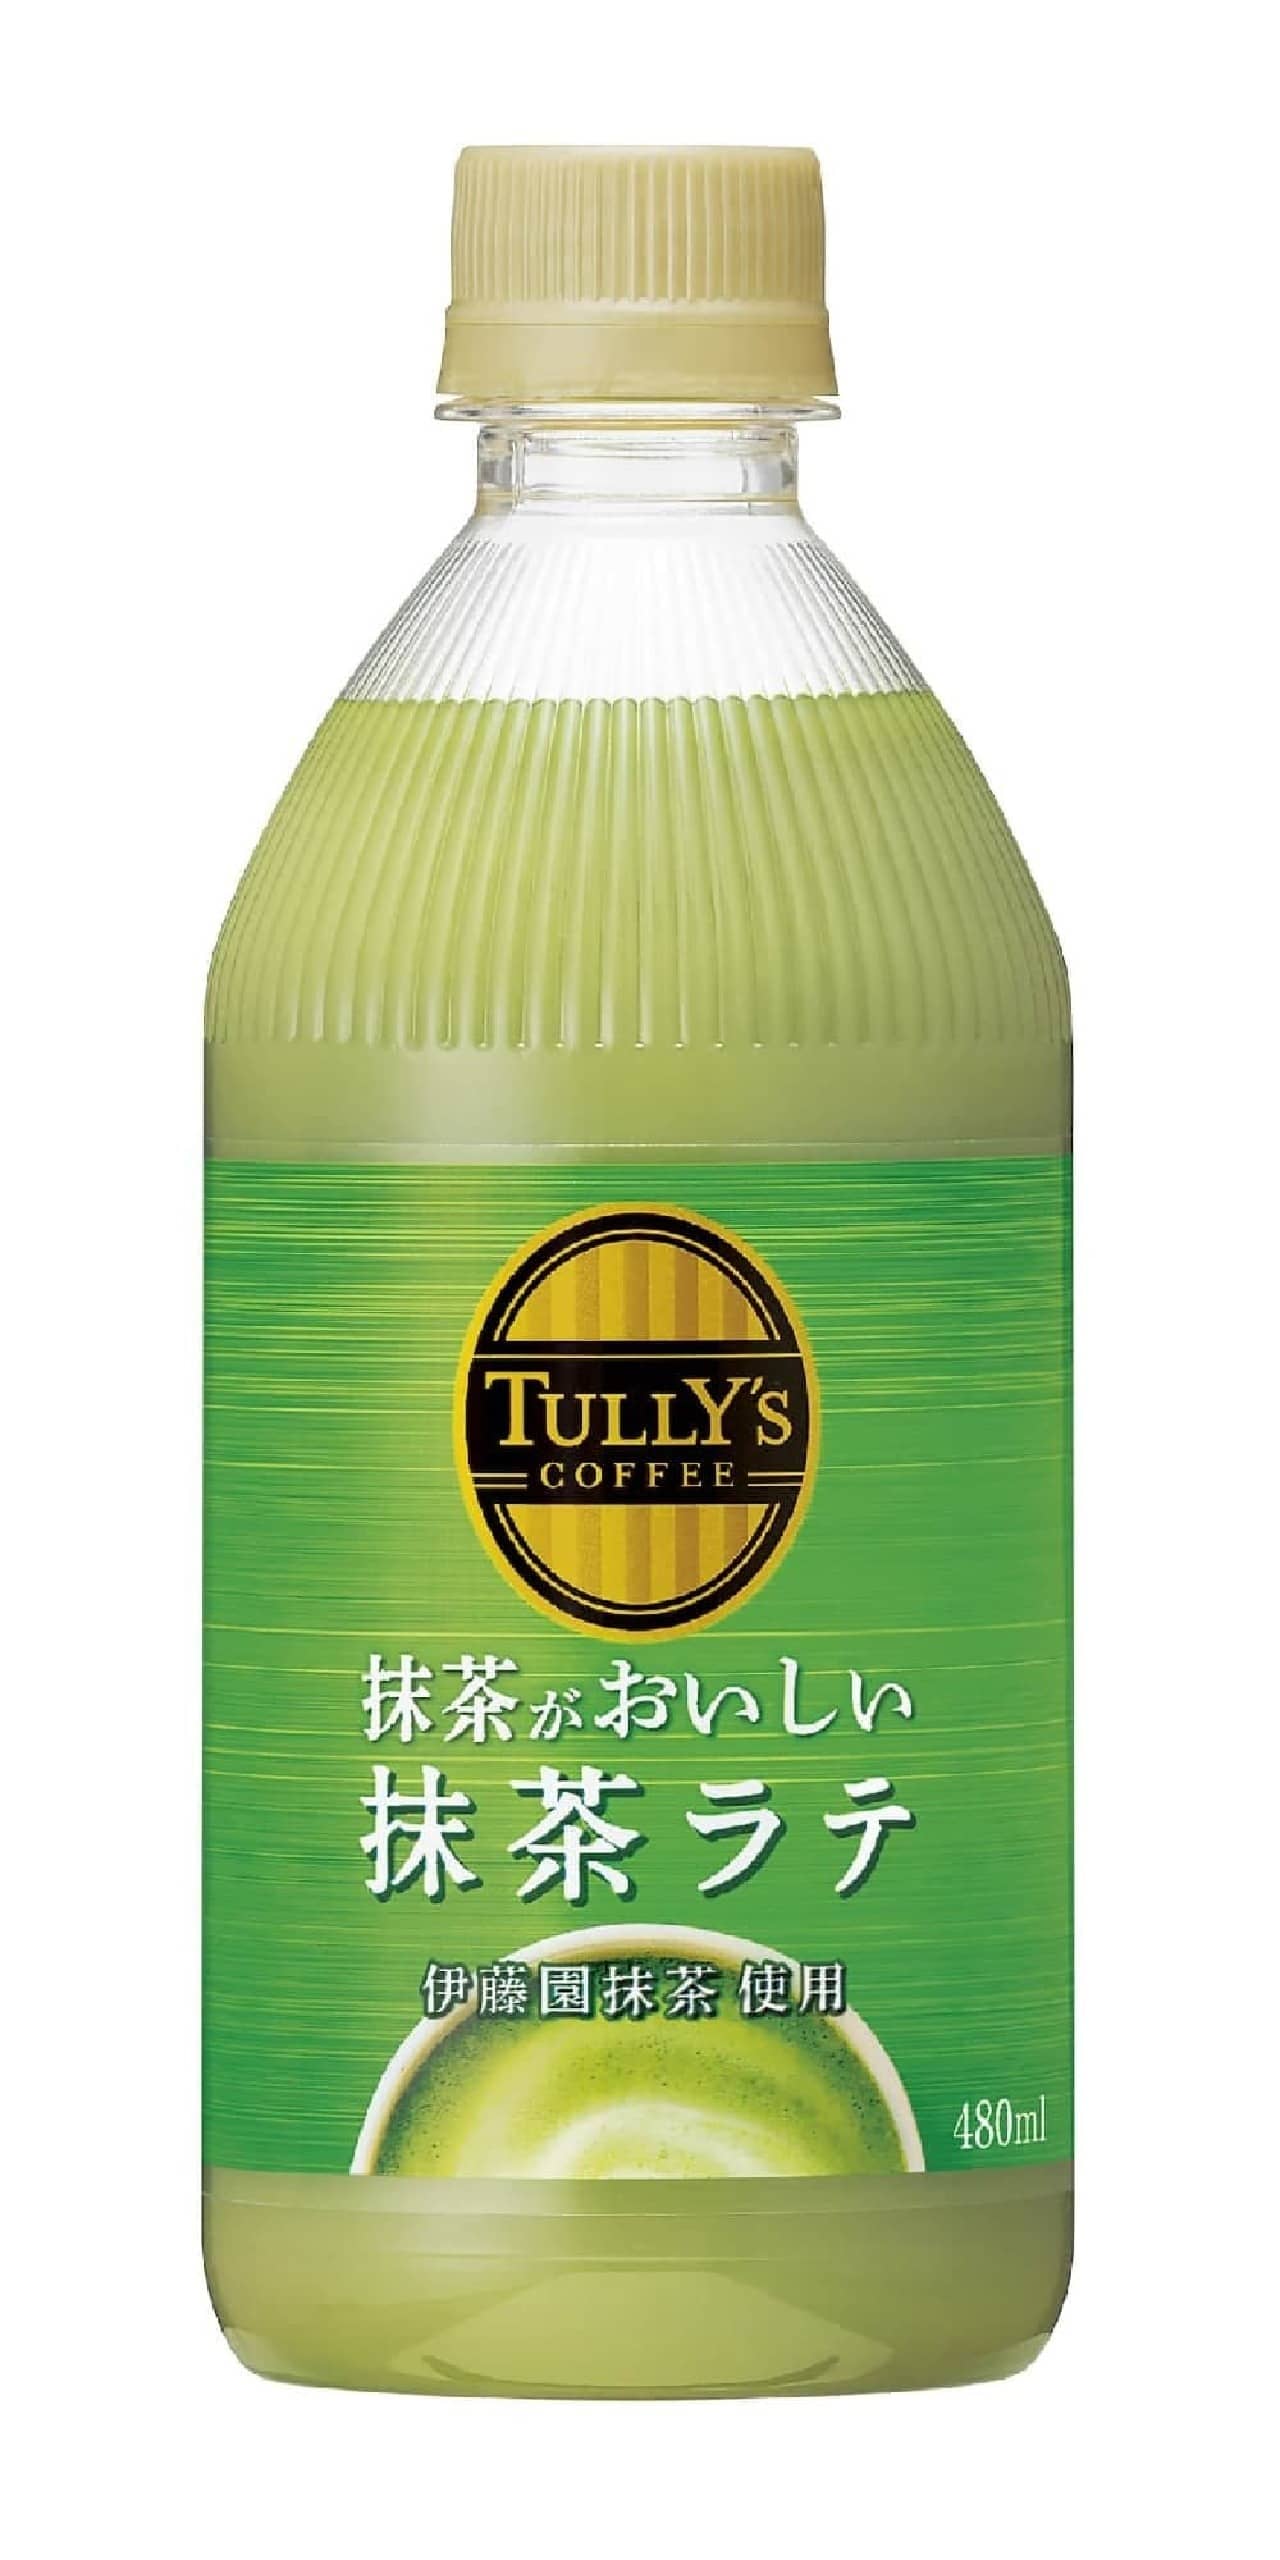 タリーズコーヒー「TULLY’S COFFEE 抹茶がおいしい抹茶ラテ」